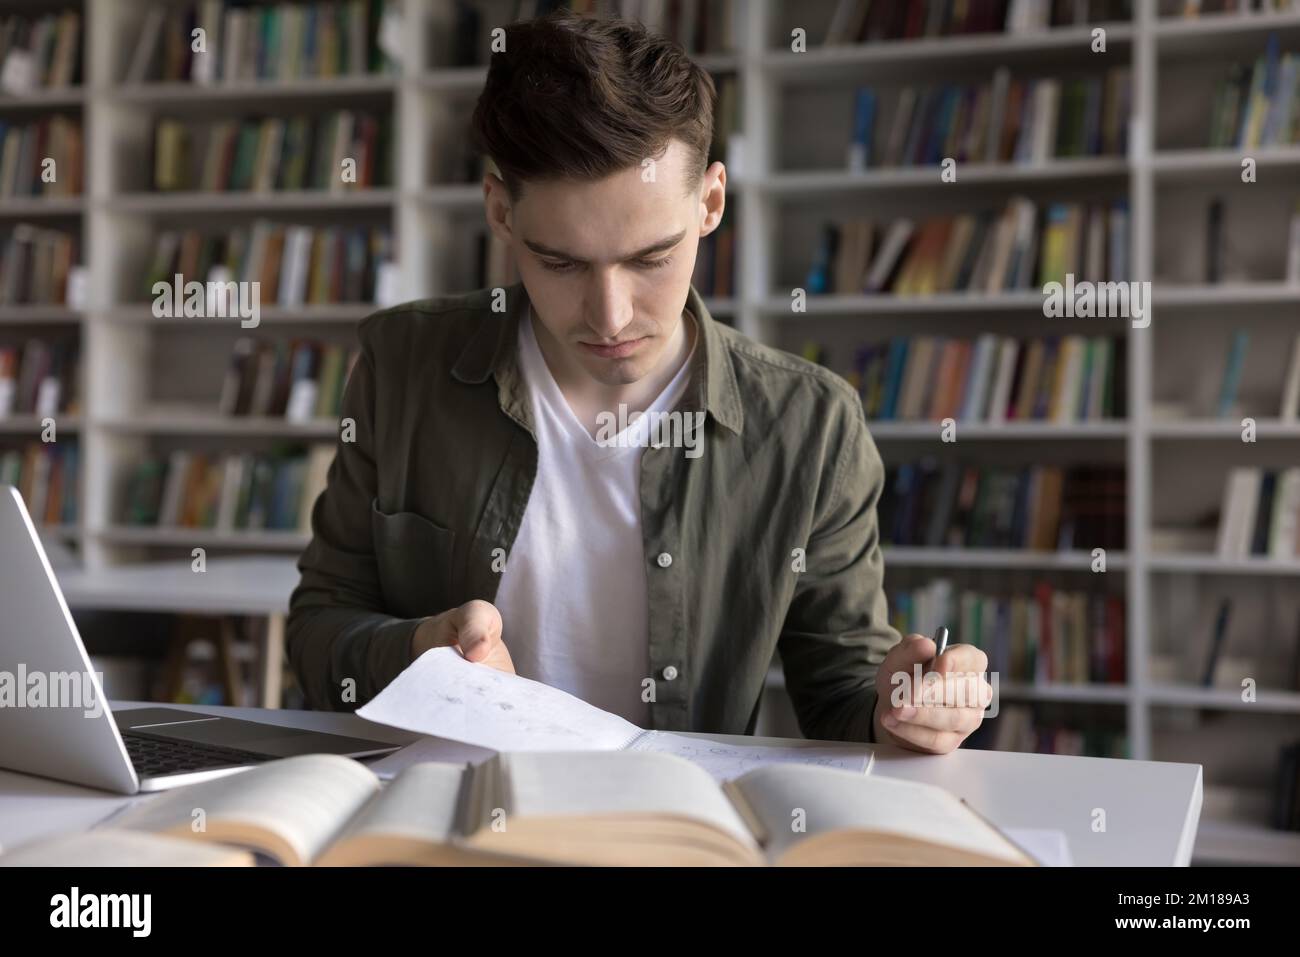 Un étudiant sérieux et concentré écrit un résumé du webinaire, lisant des notes Banque D'Images